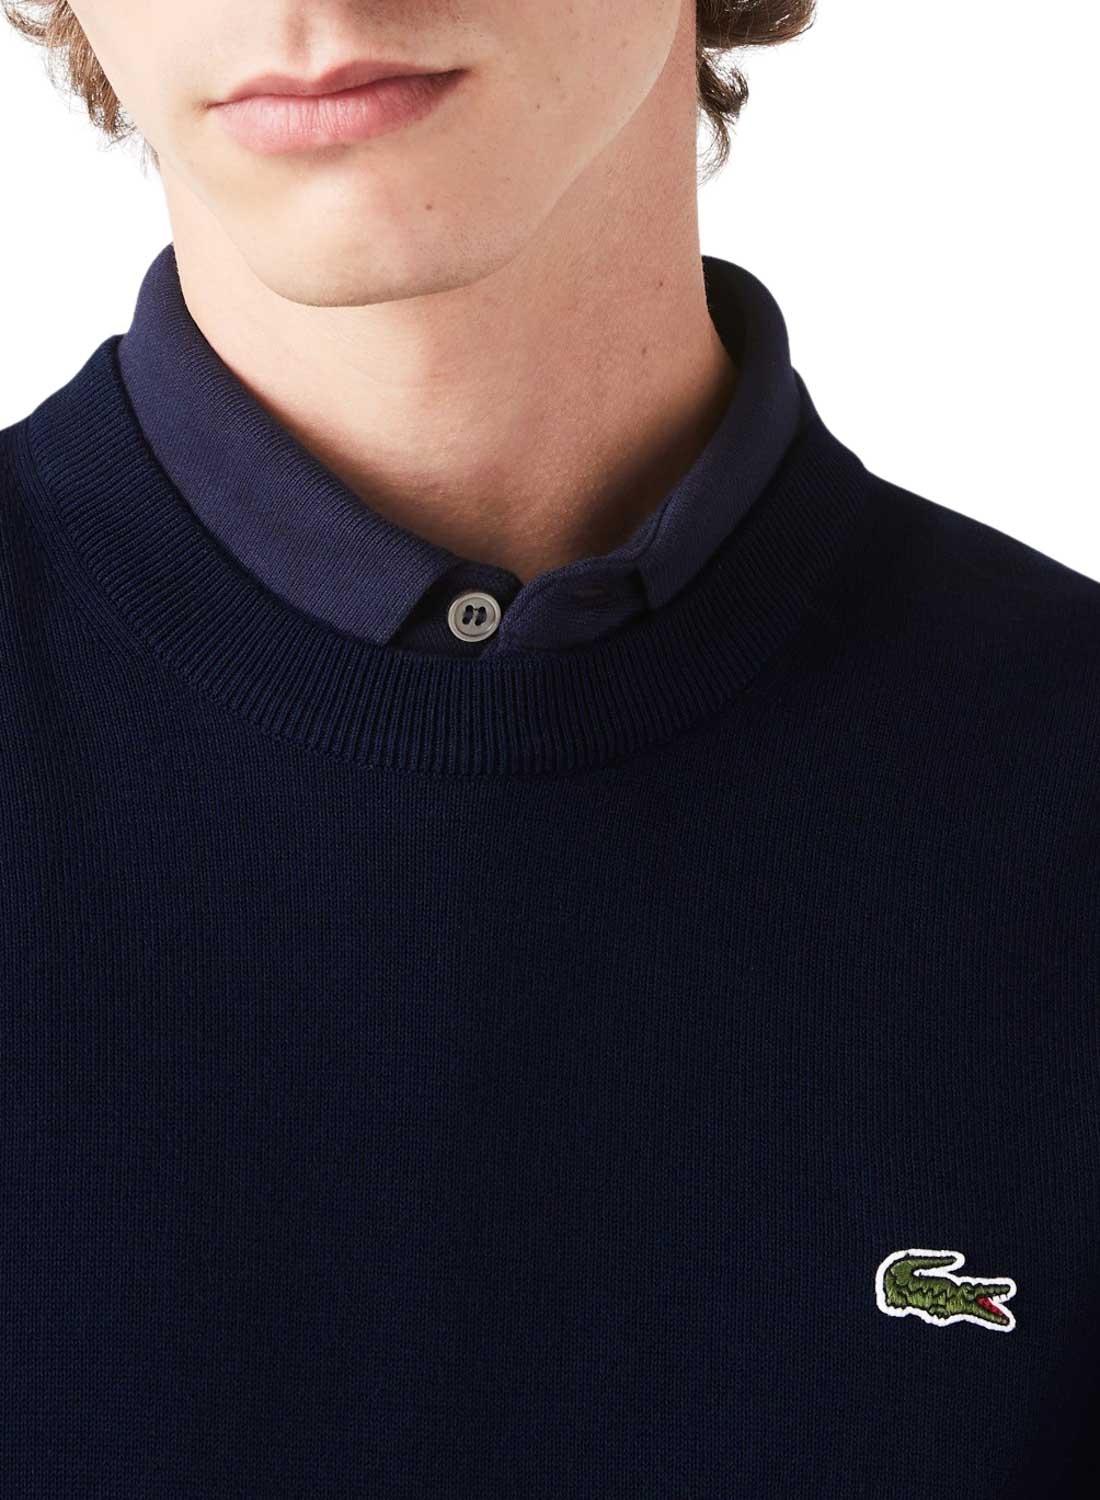 Pullover Lacoste Tricot Blu Navy per Uomo